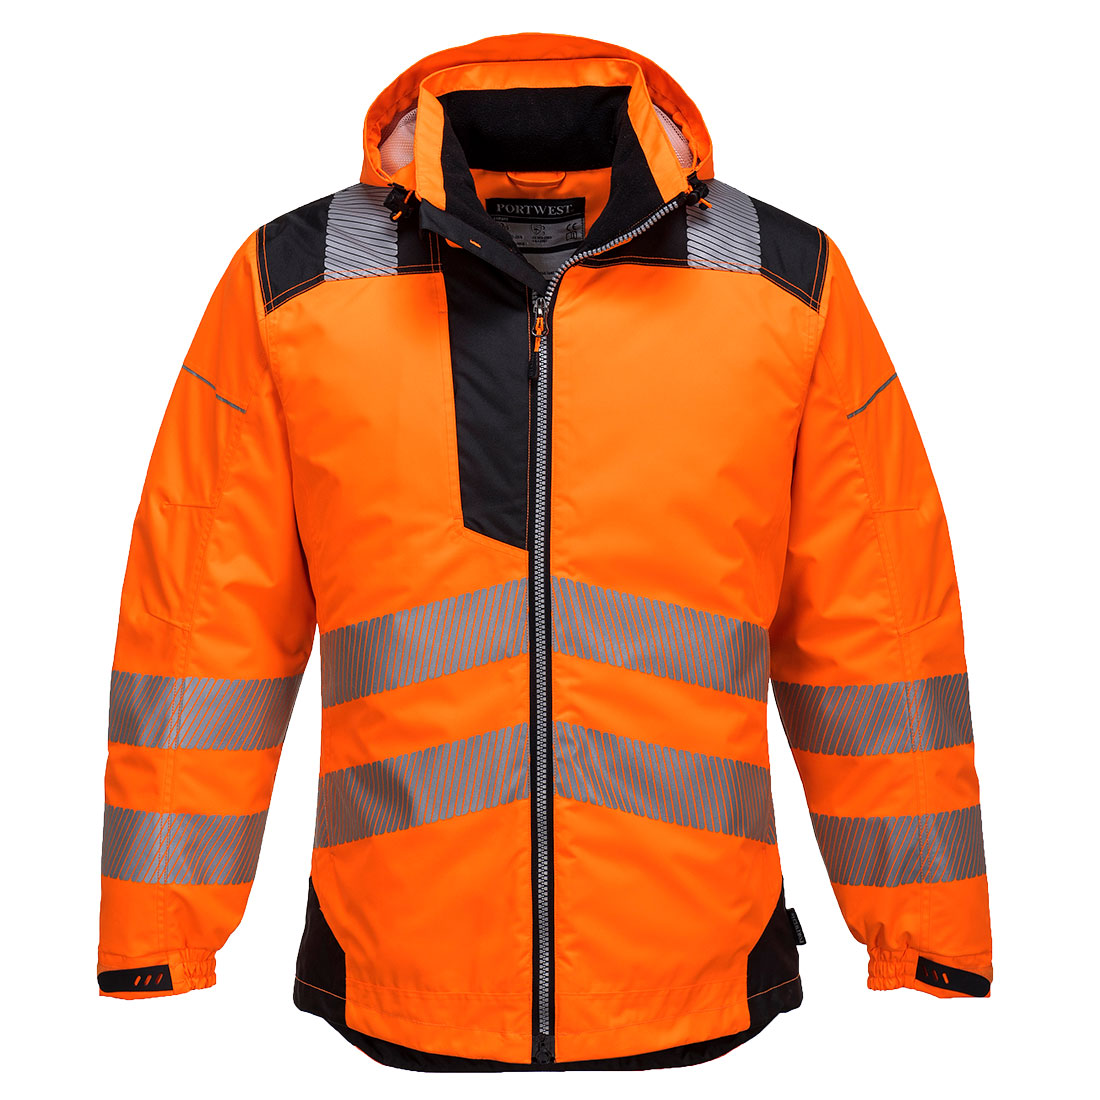 Portwest VISION HI-VIS RAIN JACKET - T400 - A to Z Safety Centre | PPE ...